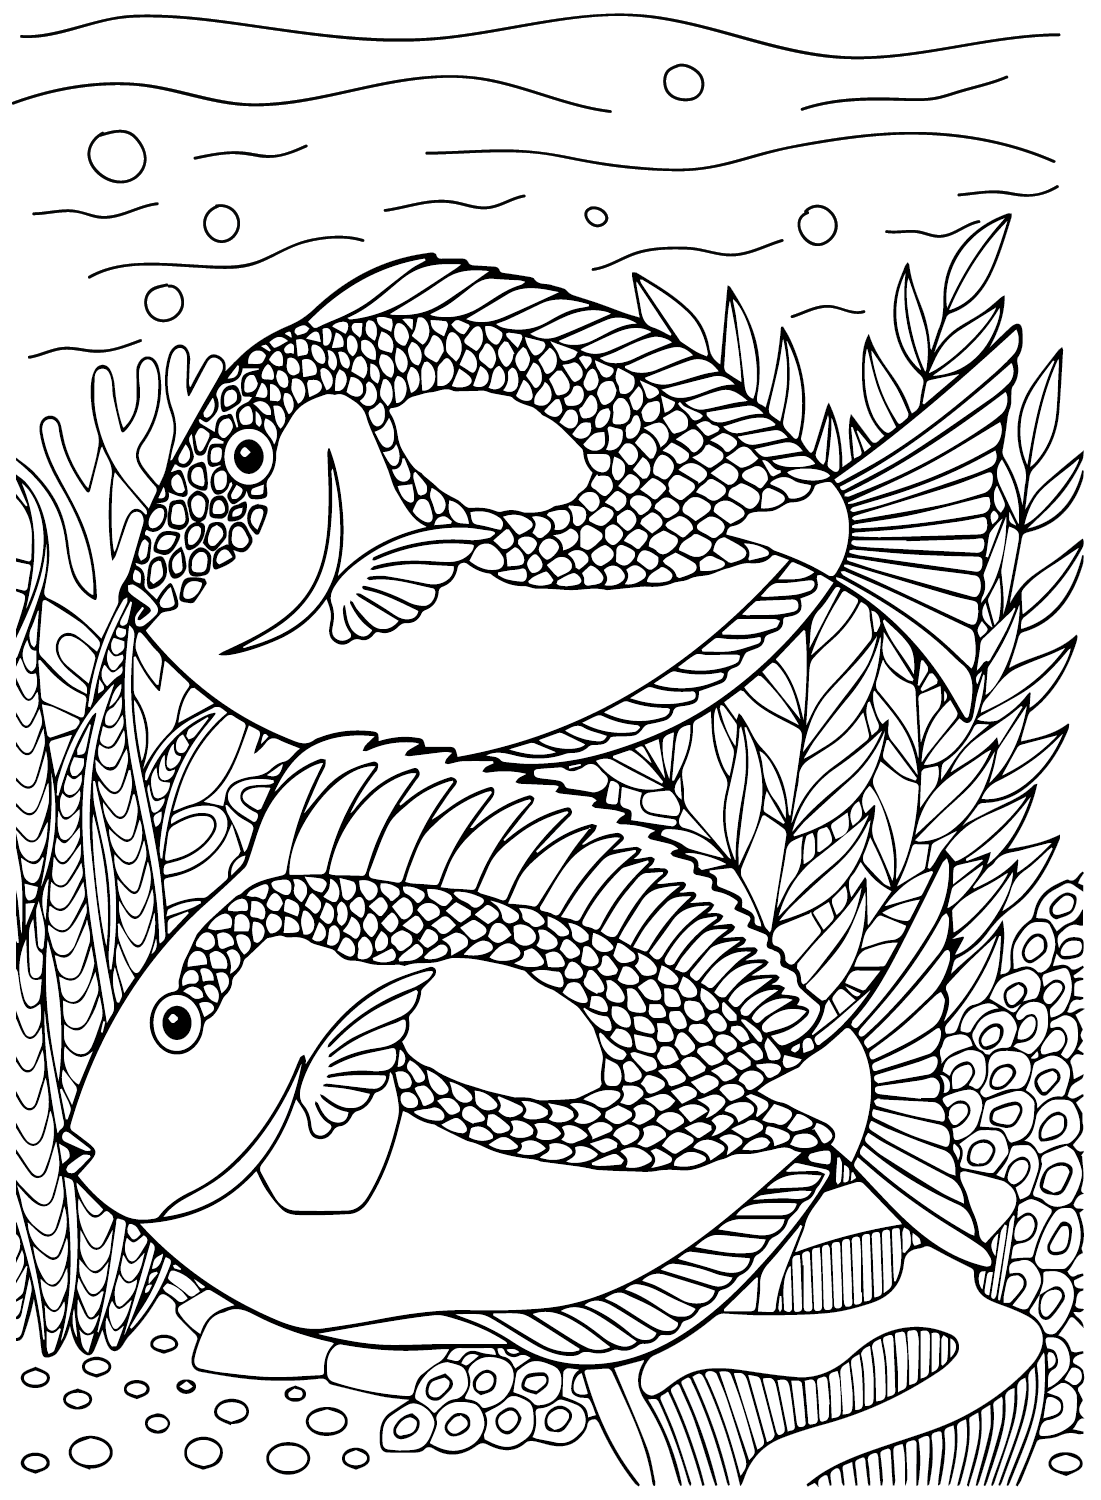 سمكة تانغ الكبيرة من أسماك تانغ